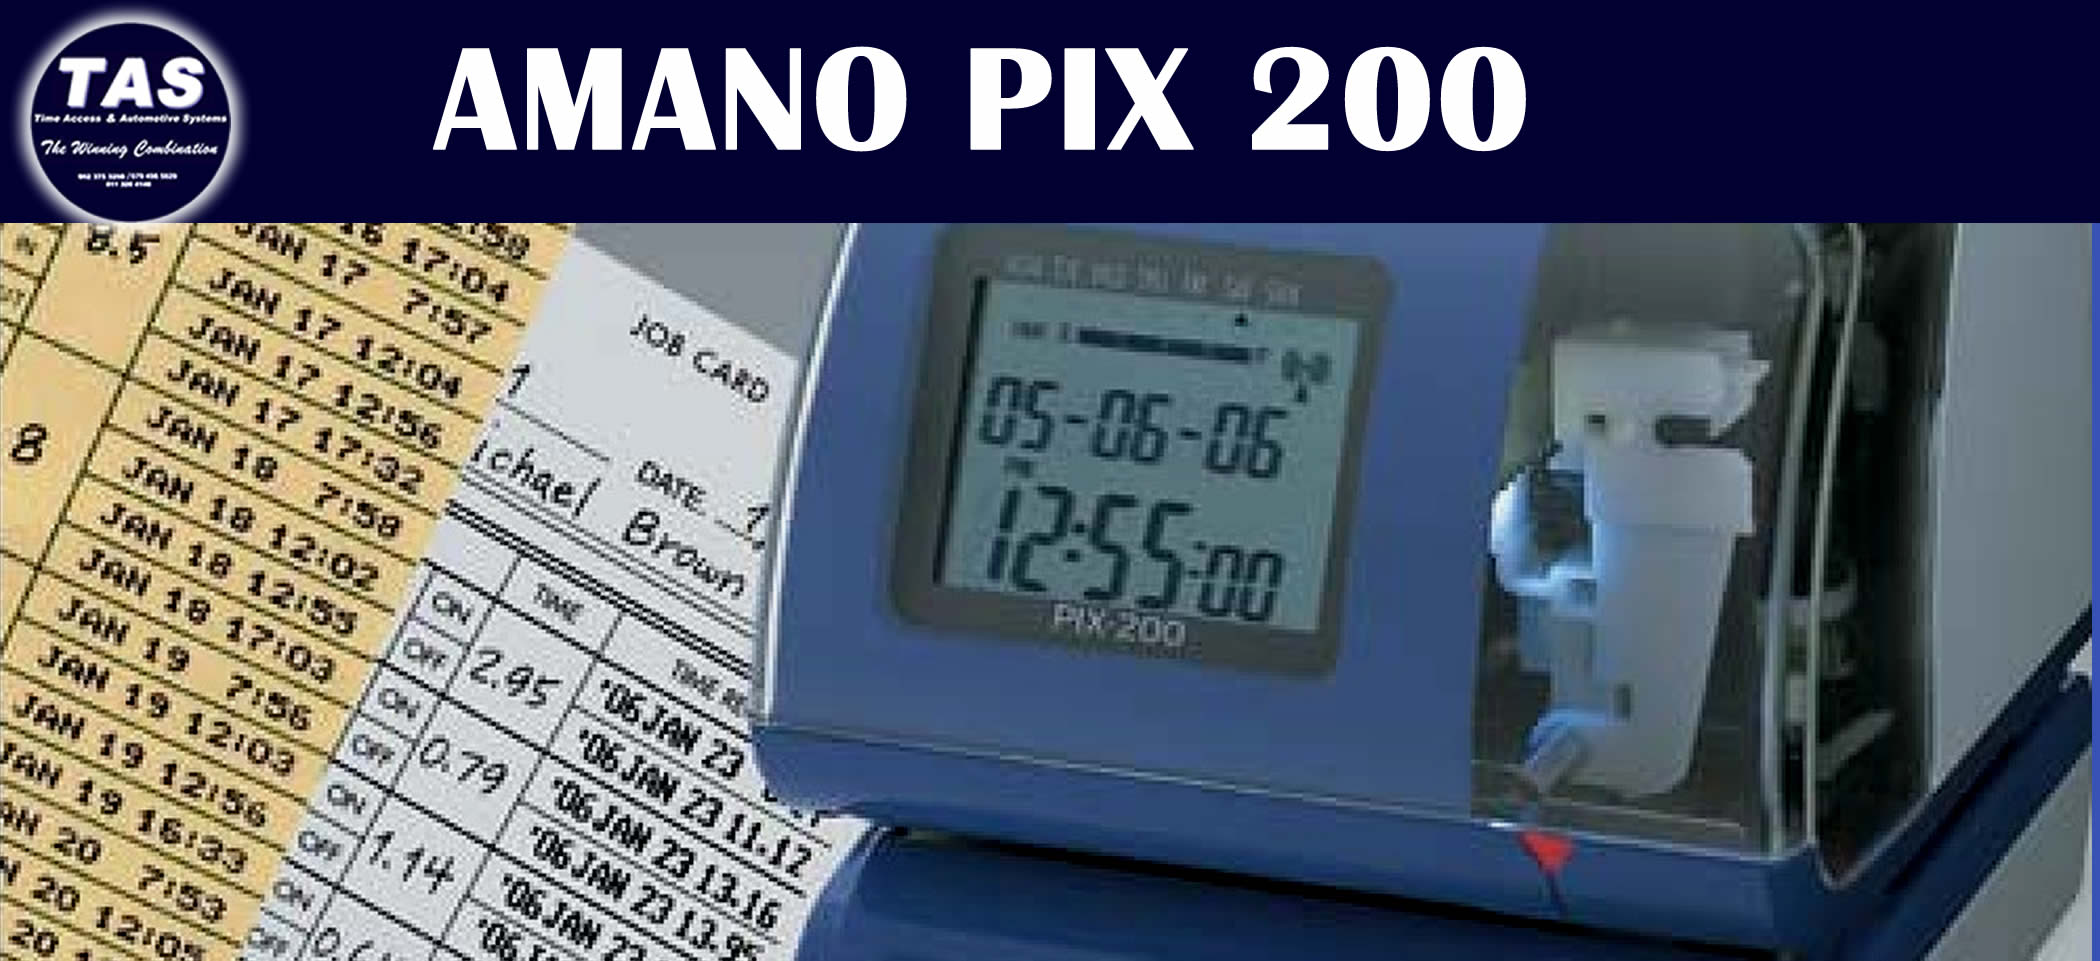 clocking-machine-AMANO PIX200 Banner